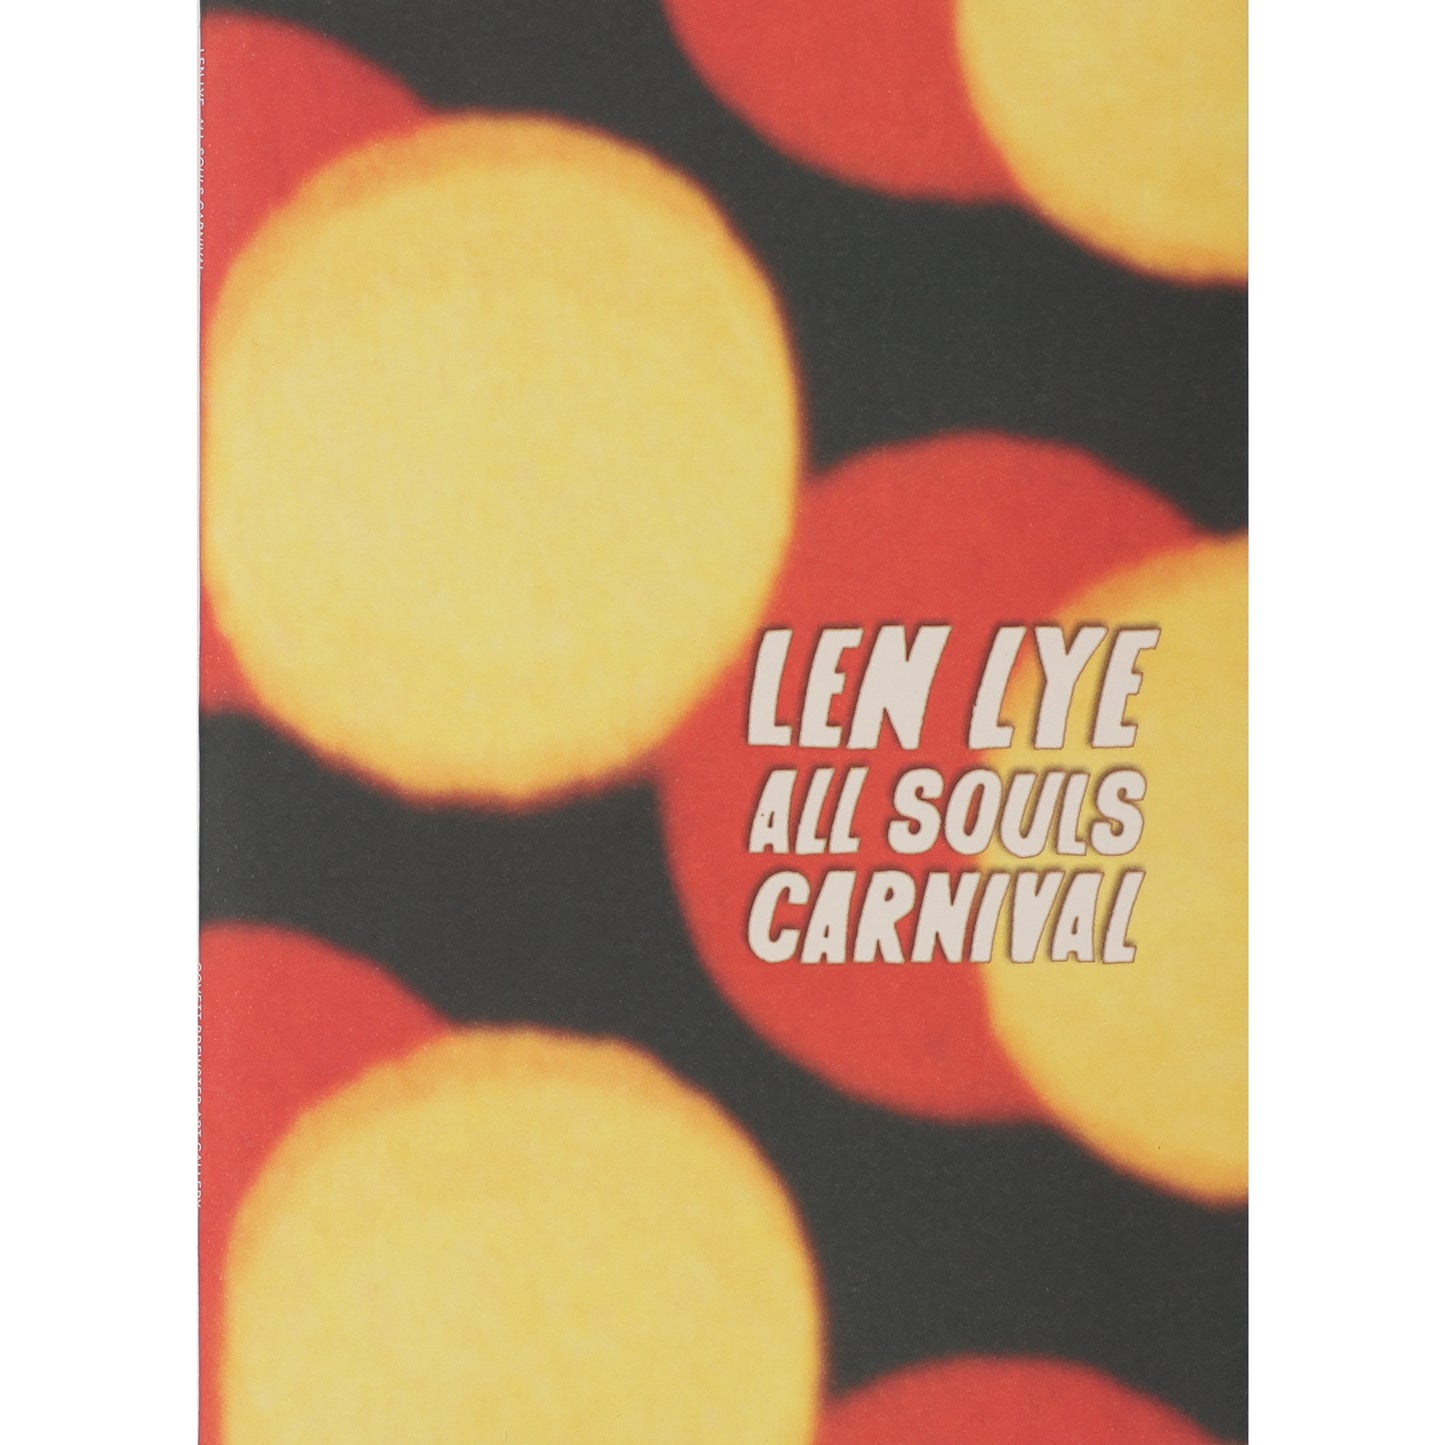 Len Lye: All Souls Carnival